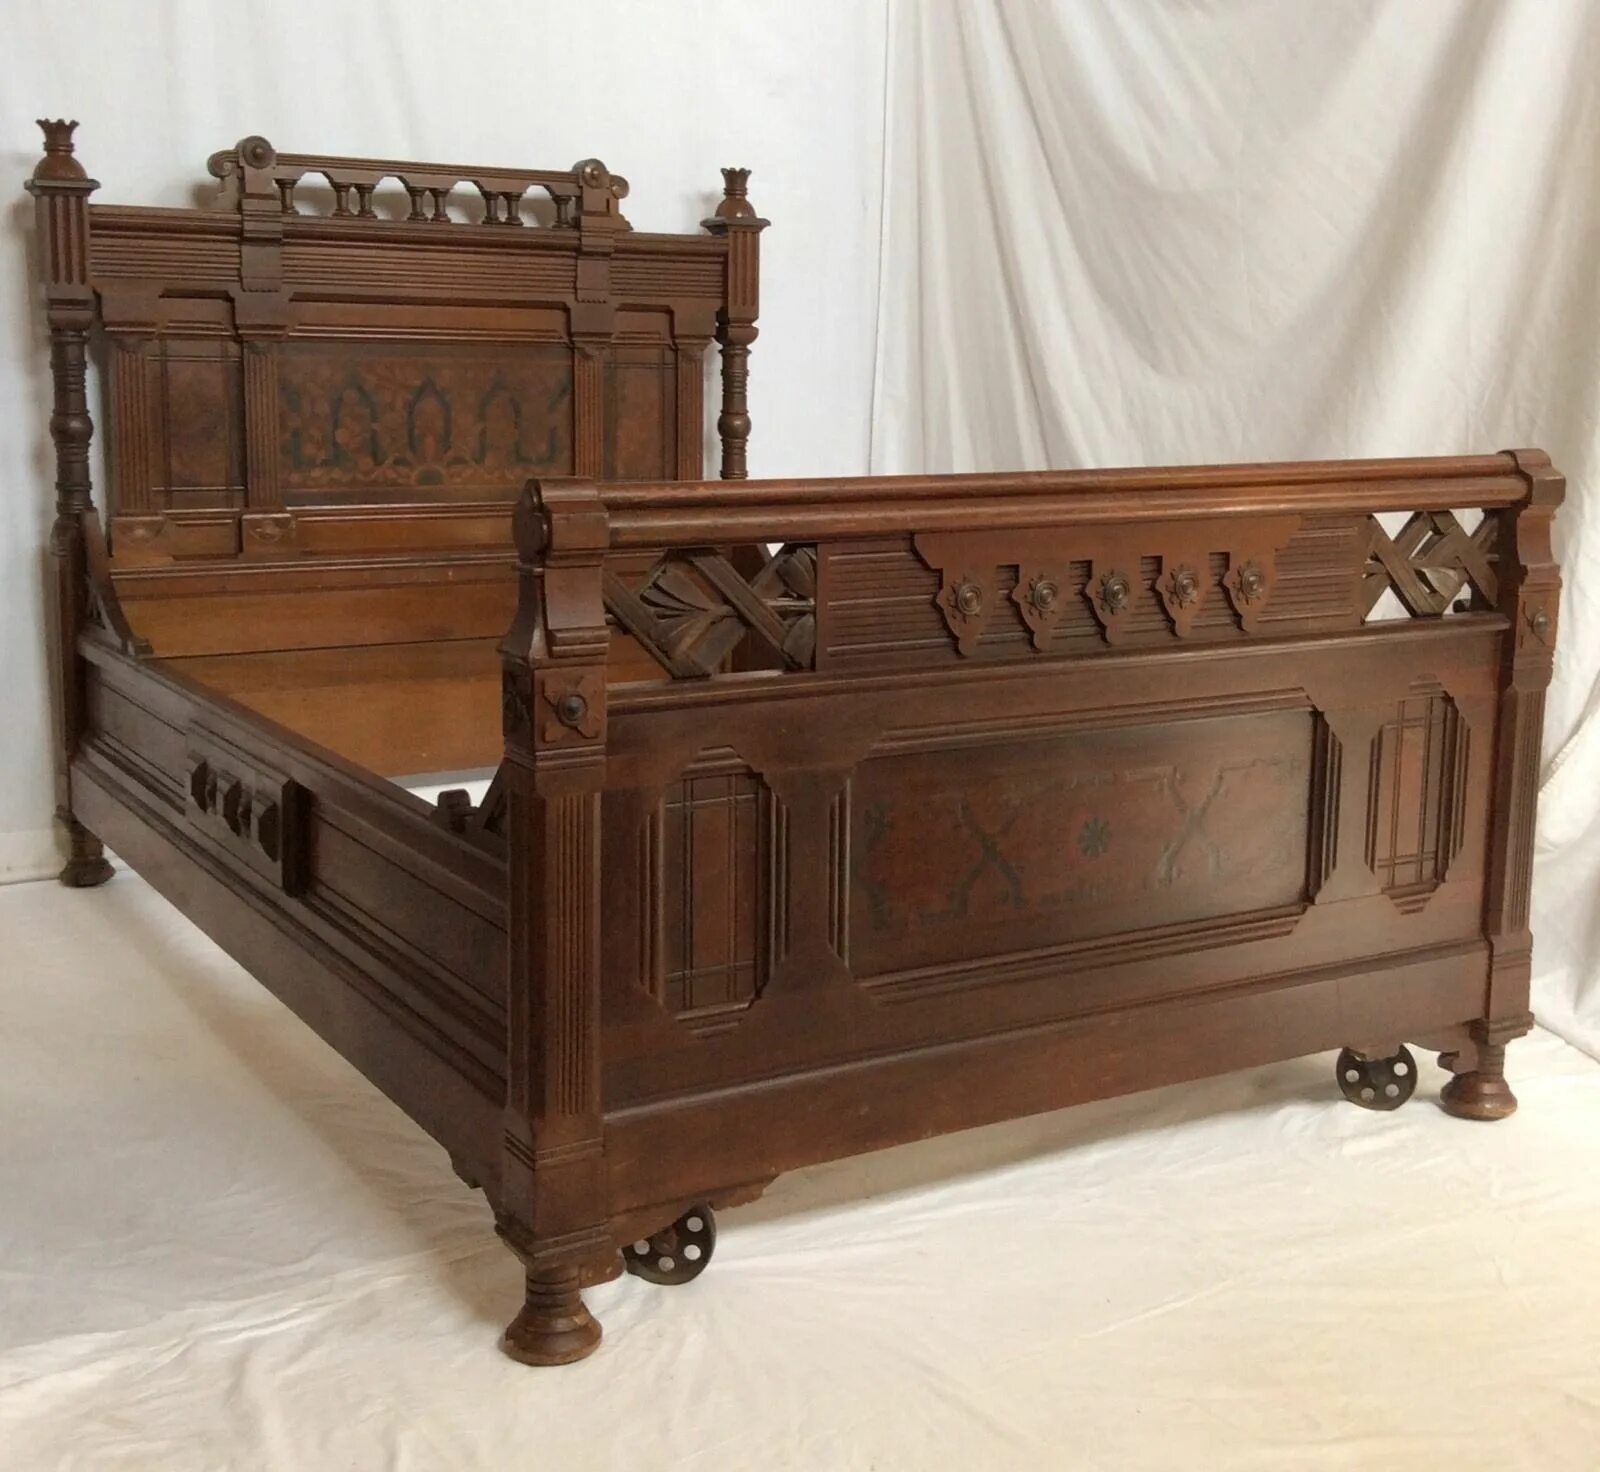 Куплю старые кровати. Старая деревянная кровать. Деревянные кровати из массива. Старинные кровати из дерева. Деревянная кровать в ретро стиле.